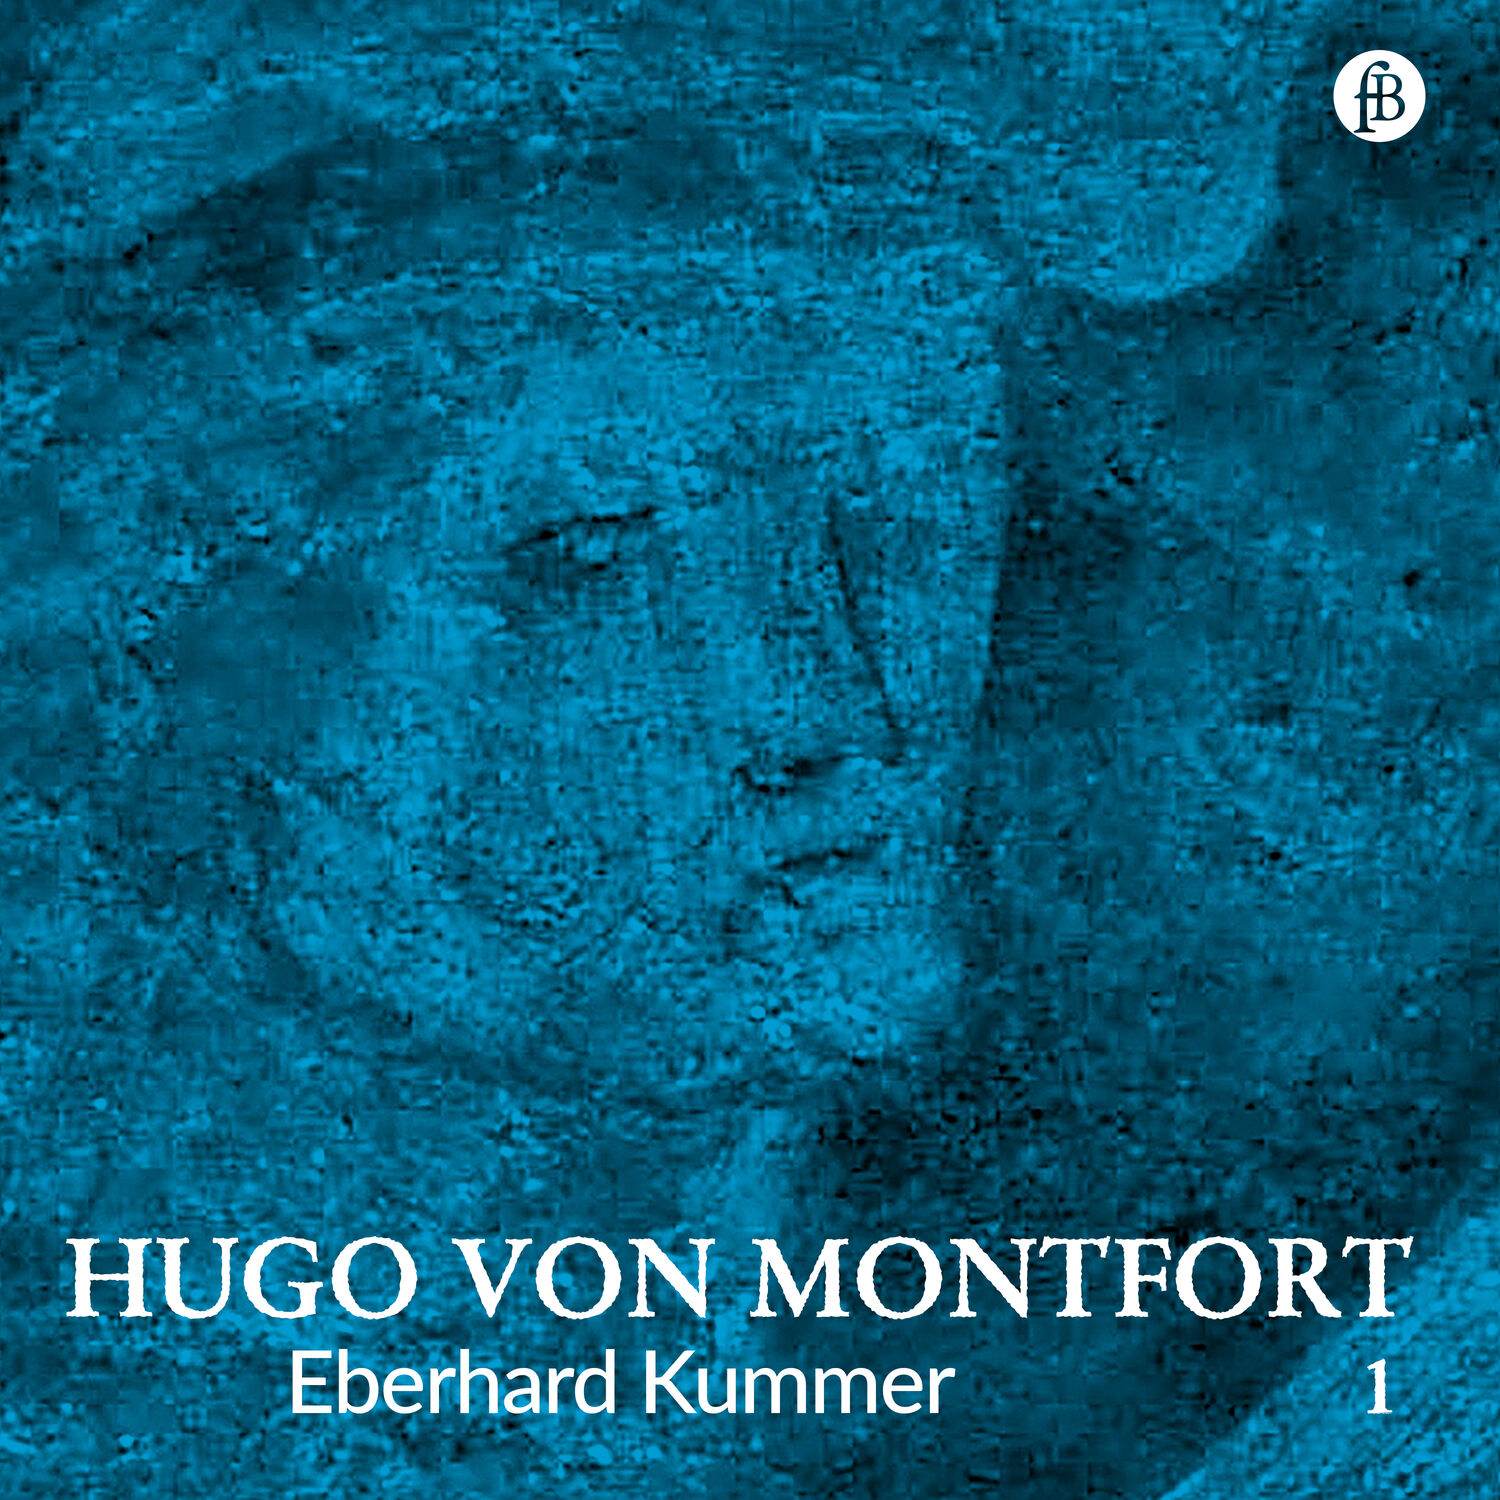 Hugo von Montfort 1 - medieval lieder - Eberhard Kummer, bass-baritone, harp (no booklet)